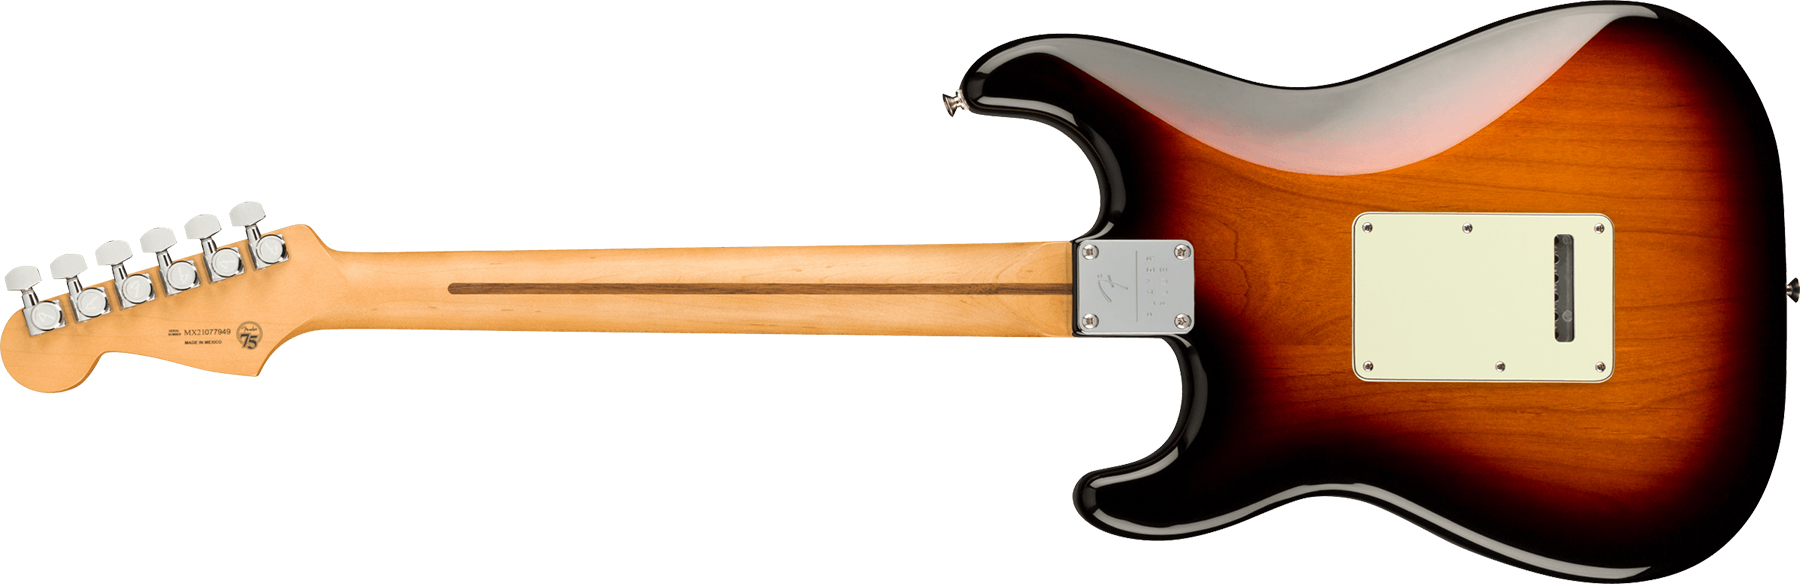 Fender Strat Player Plus Lh Mex Gaucher 3s Trem Mn - 3-color Sunburst - Linkshandige elektrische gitaar - Variation 1